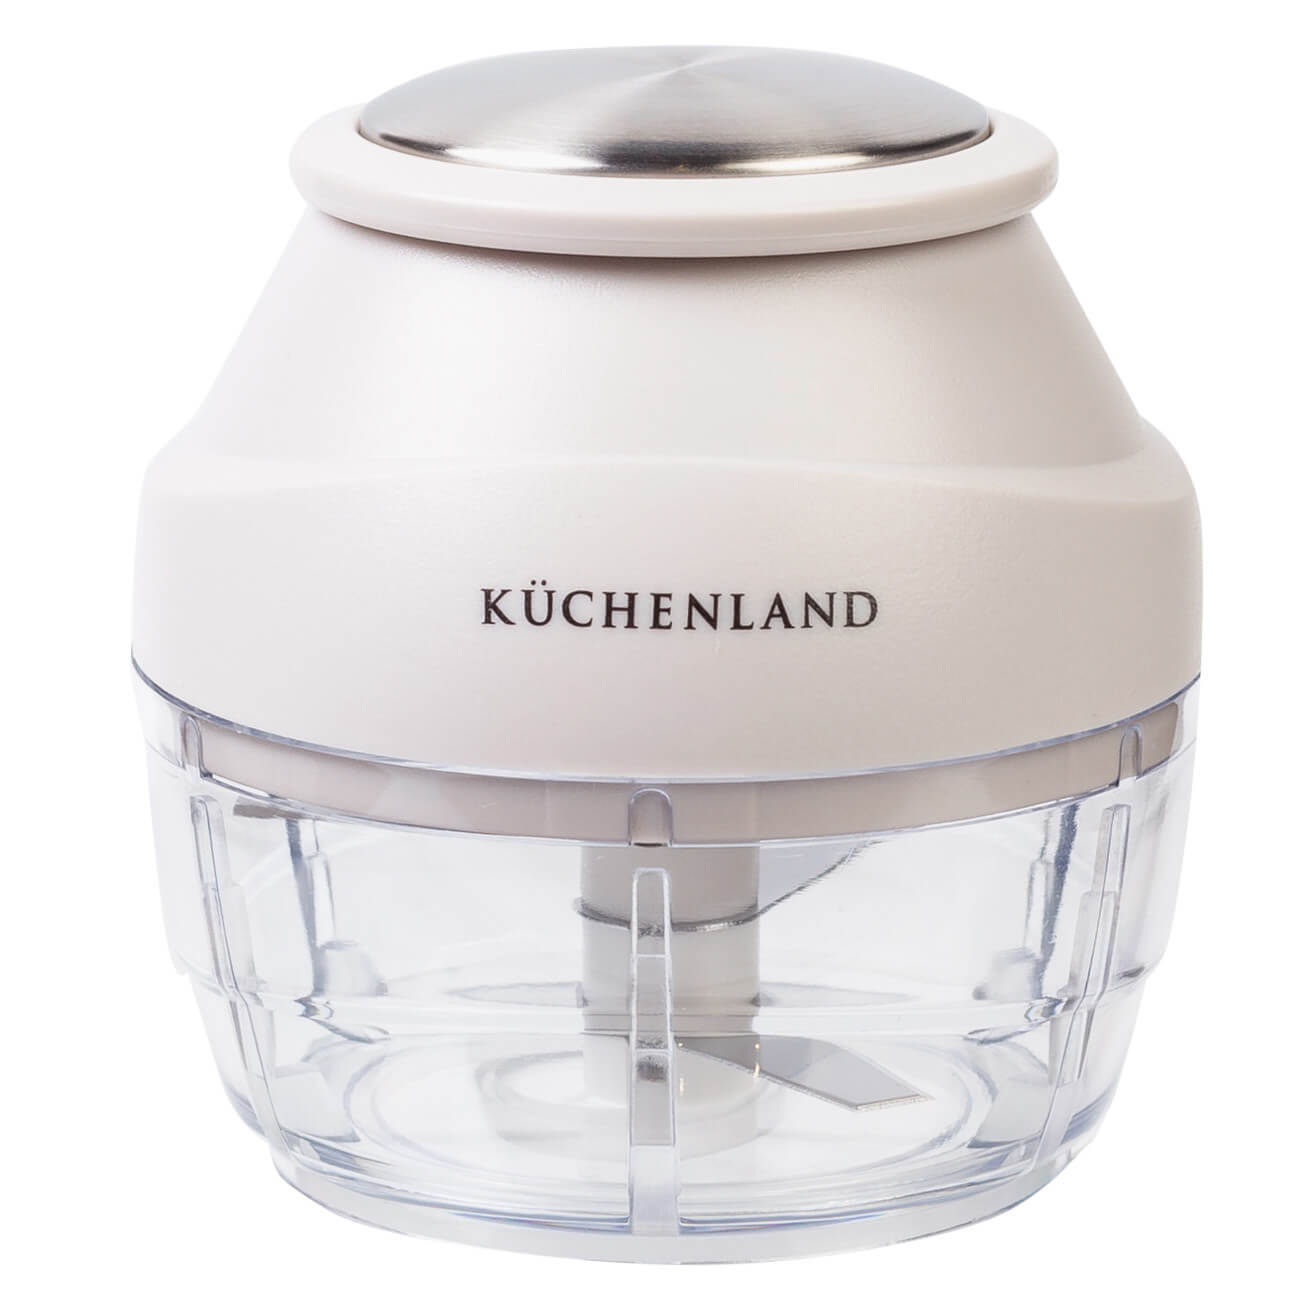 Kuchenland Измельчитель-блендер, 9 см, механический, пластик/сталь, молочный, Soft kitchen